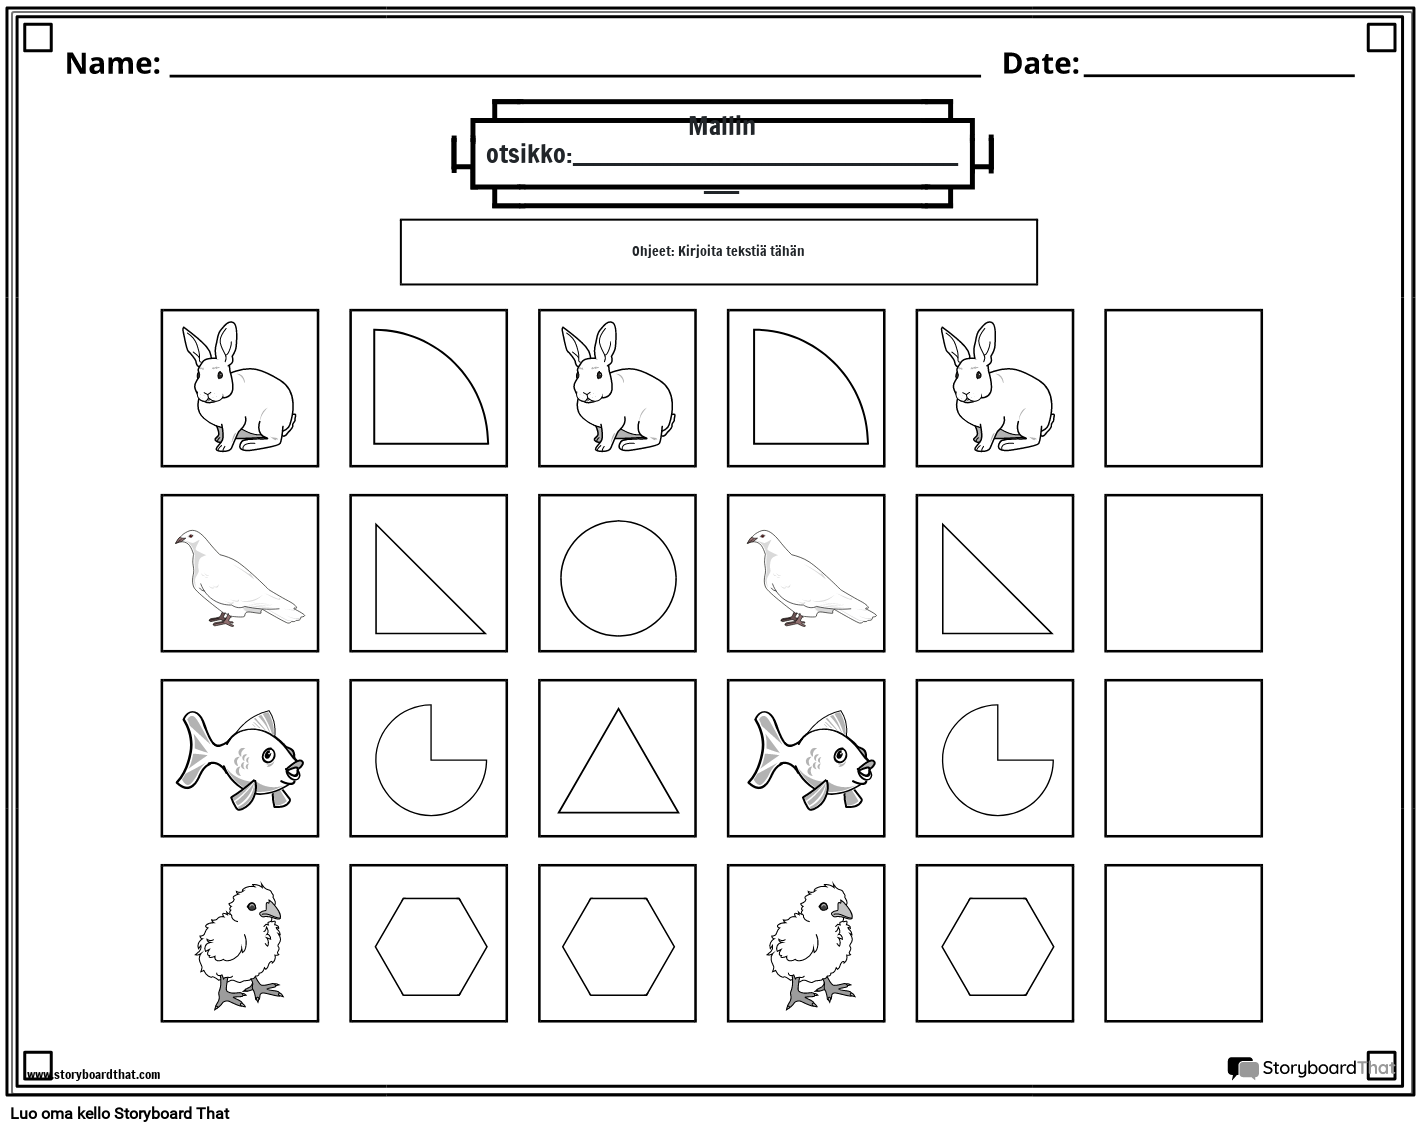 Eläimet ja muodot -kuvio -laskentataulukko (mustavalkoinen)